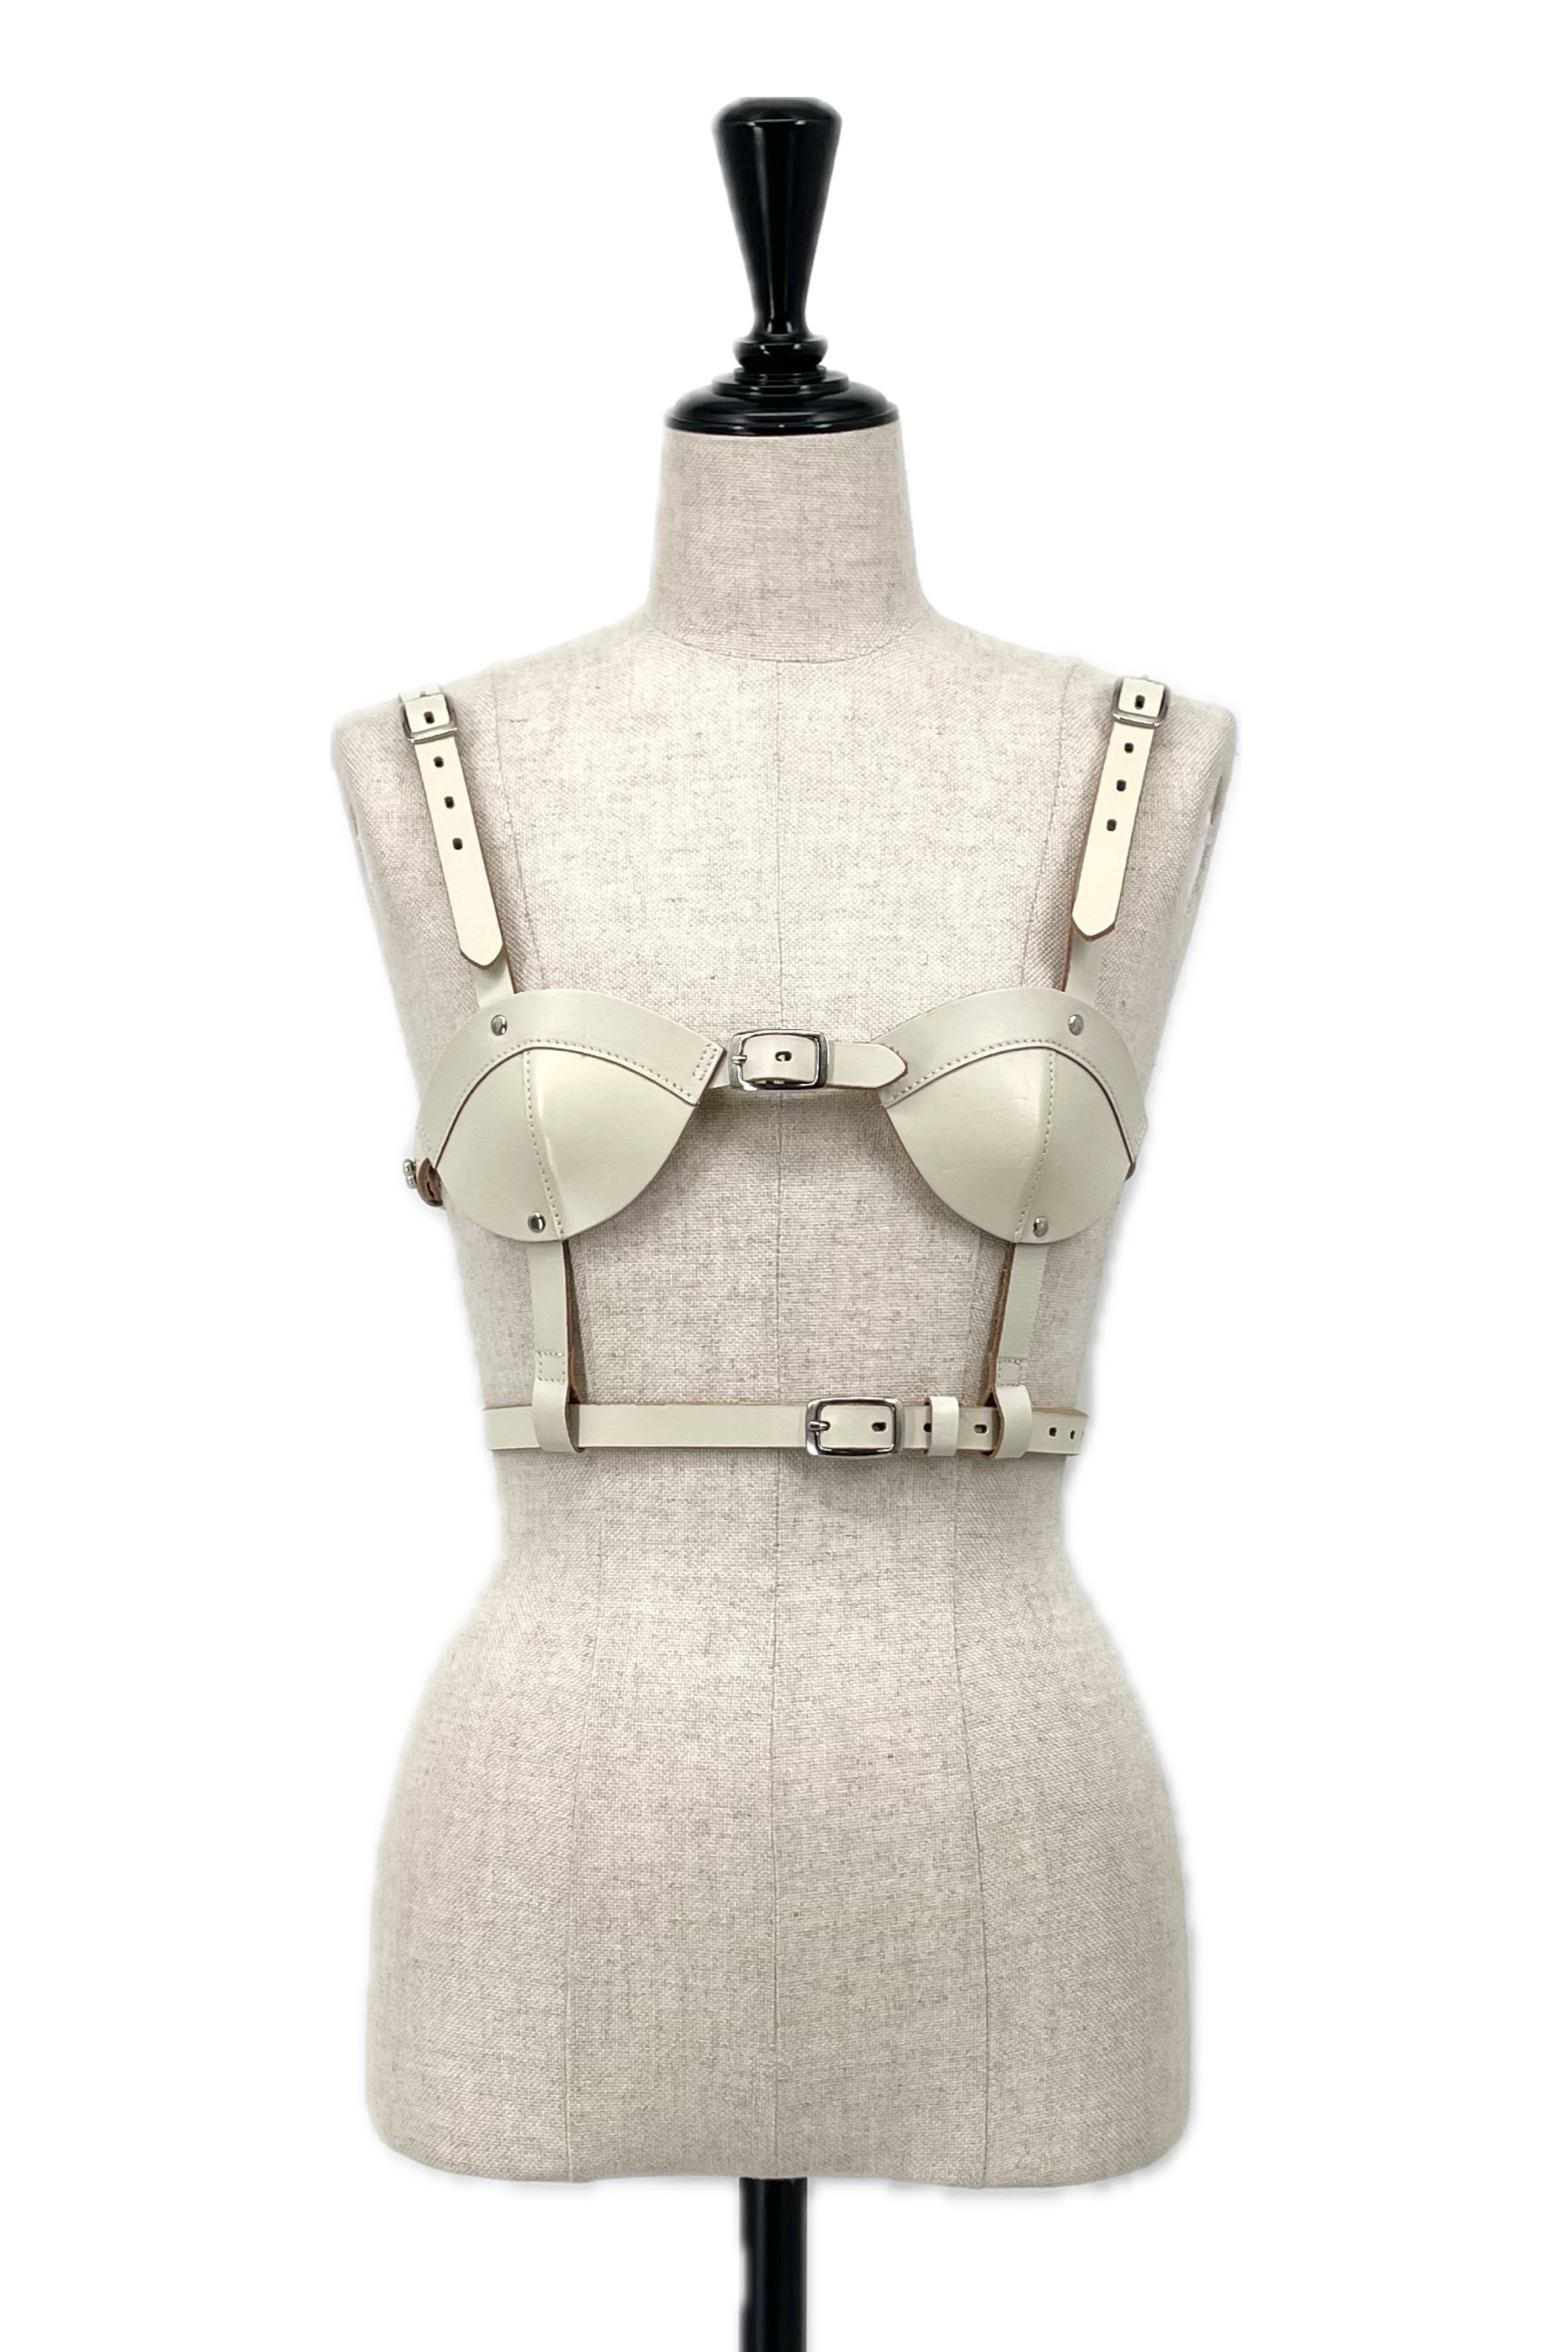 FA555403　Litmus Her Praha bra harness